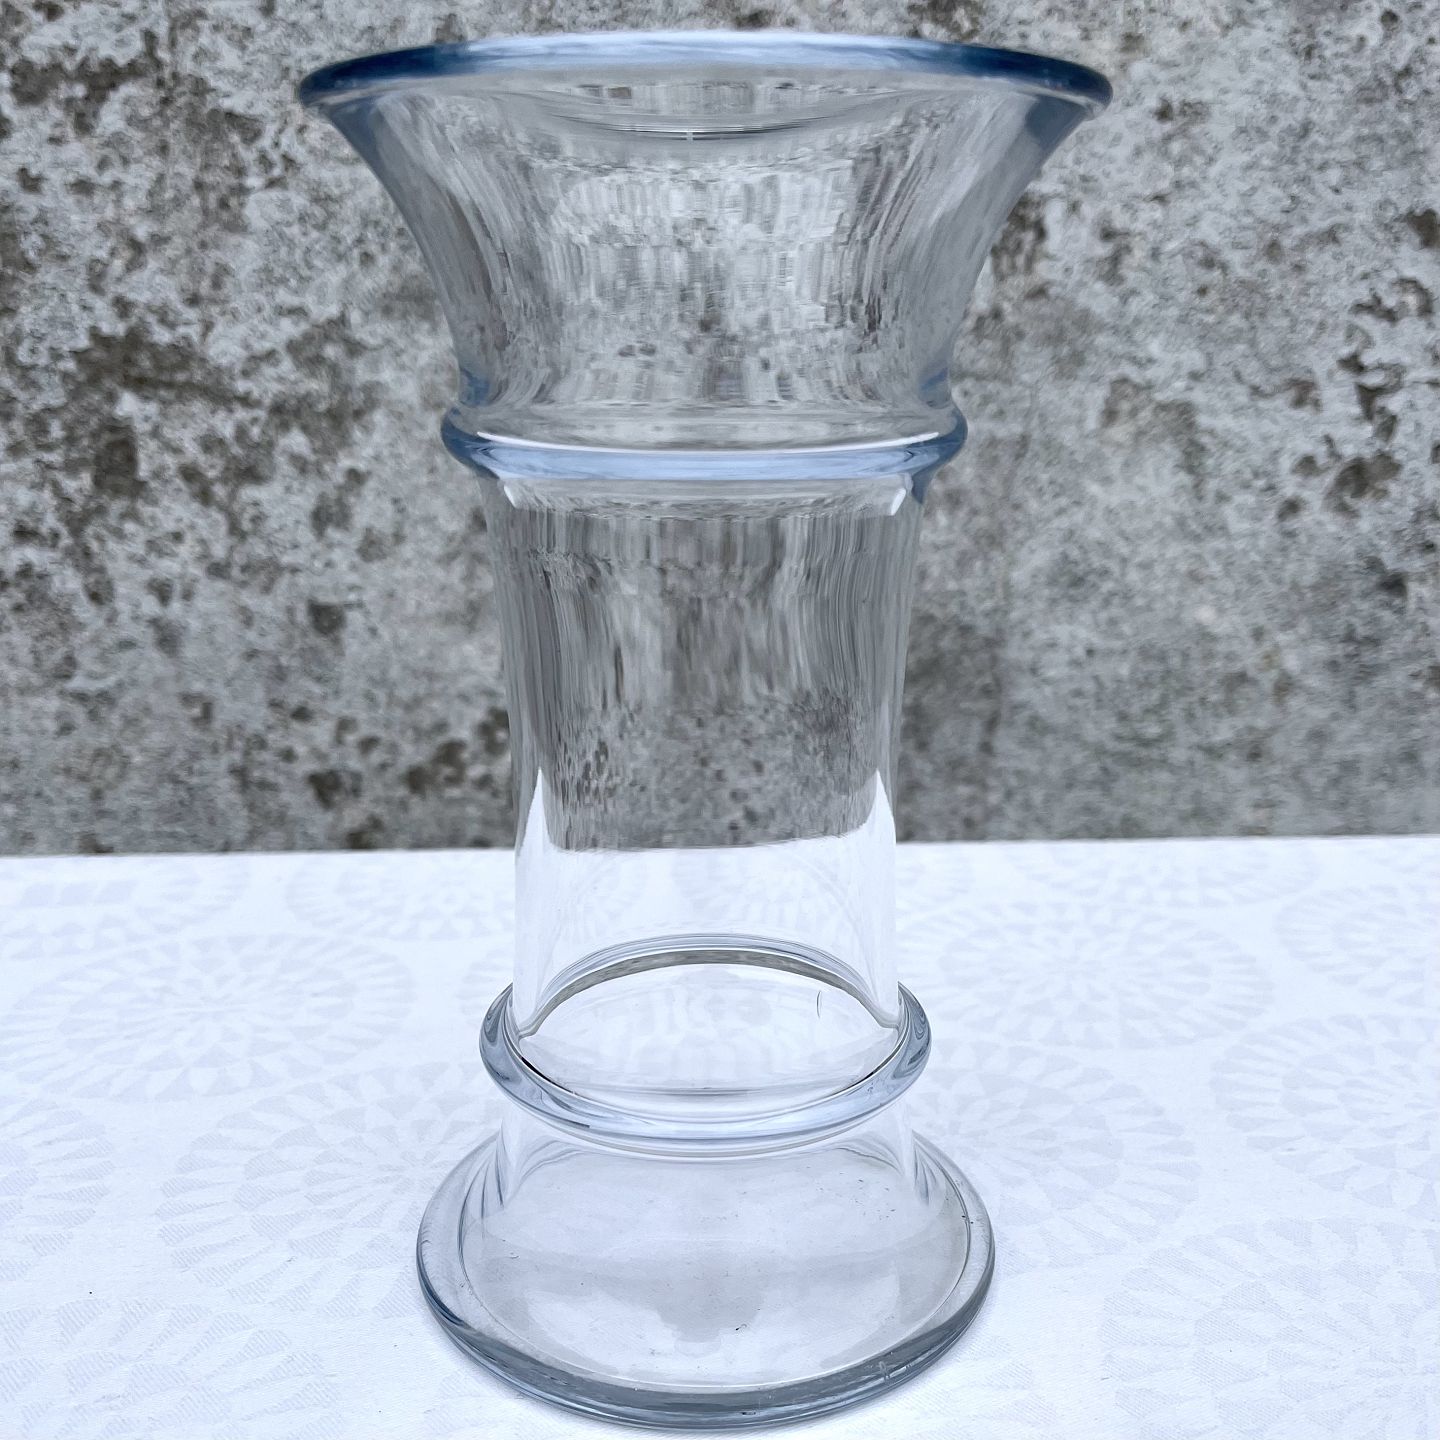 Moster Olga - & Design - Holmegaard * MB vase * Clear glass * * 175 - * MB vase * glass * * 175 DKK